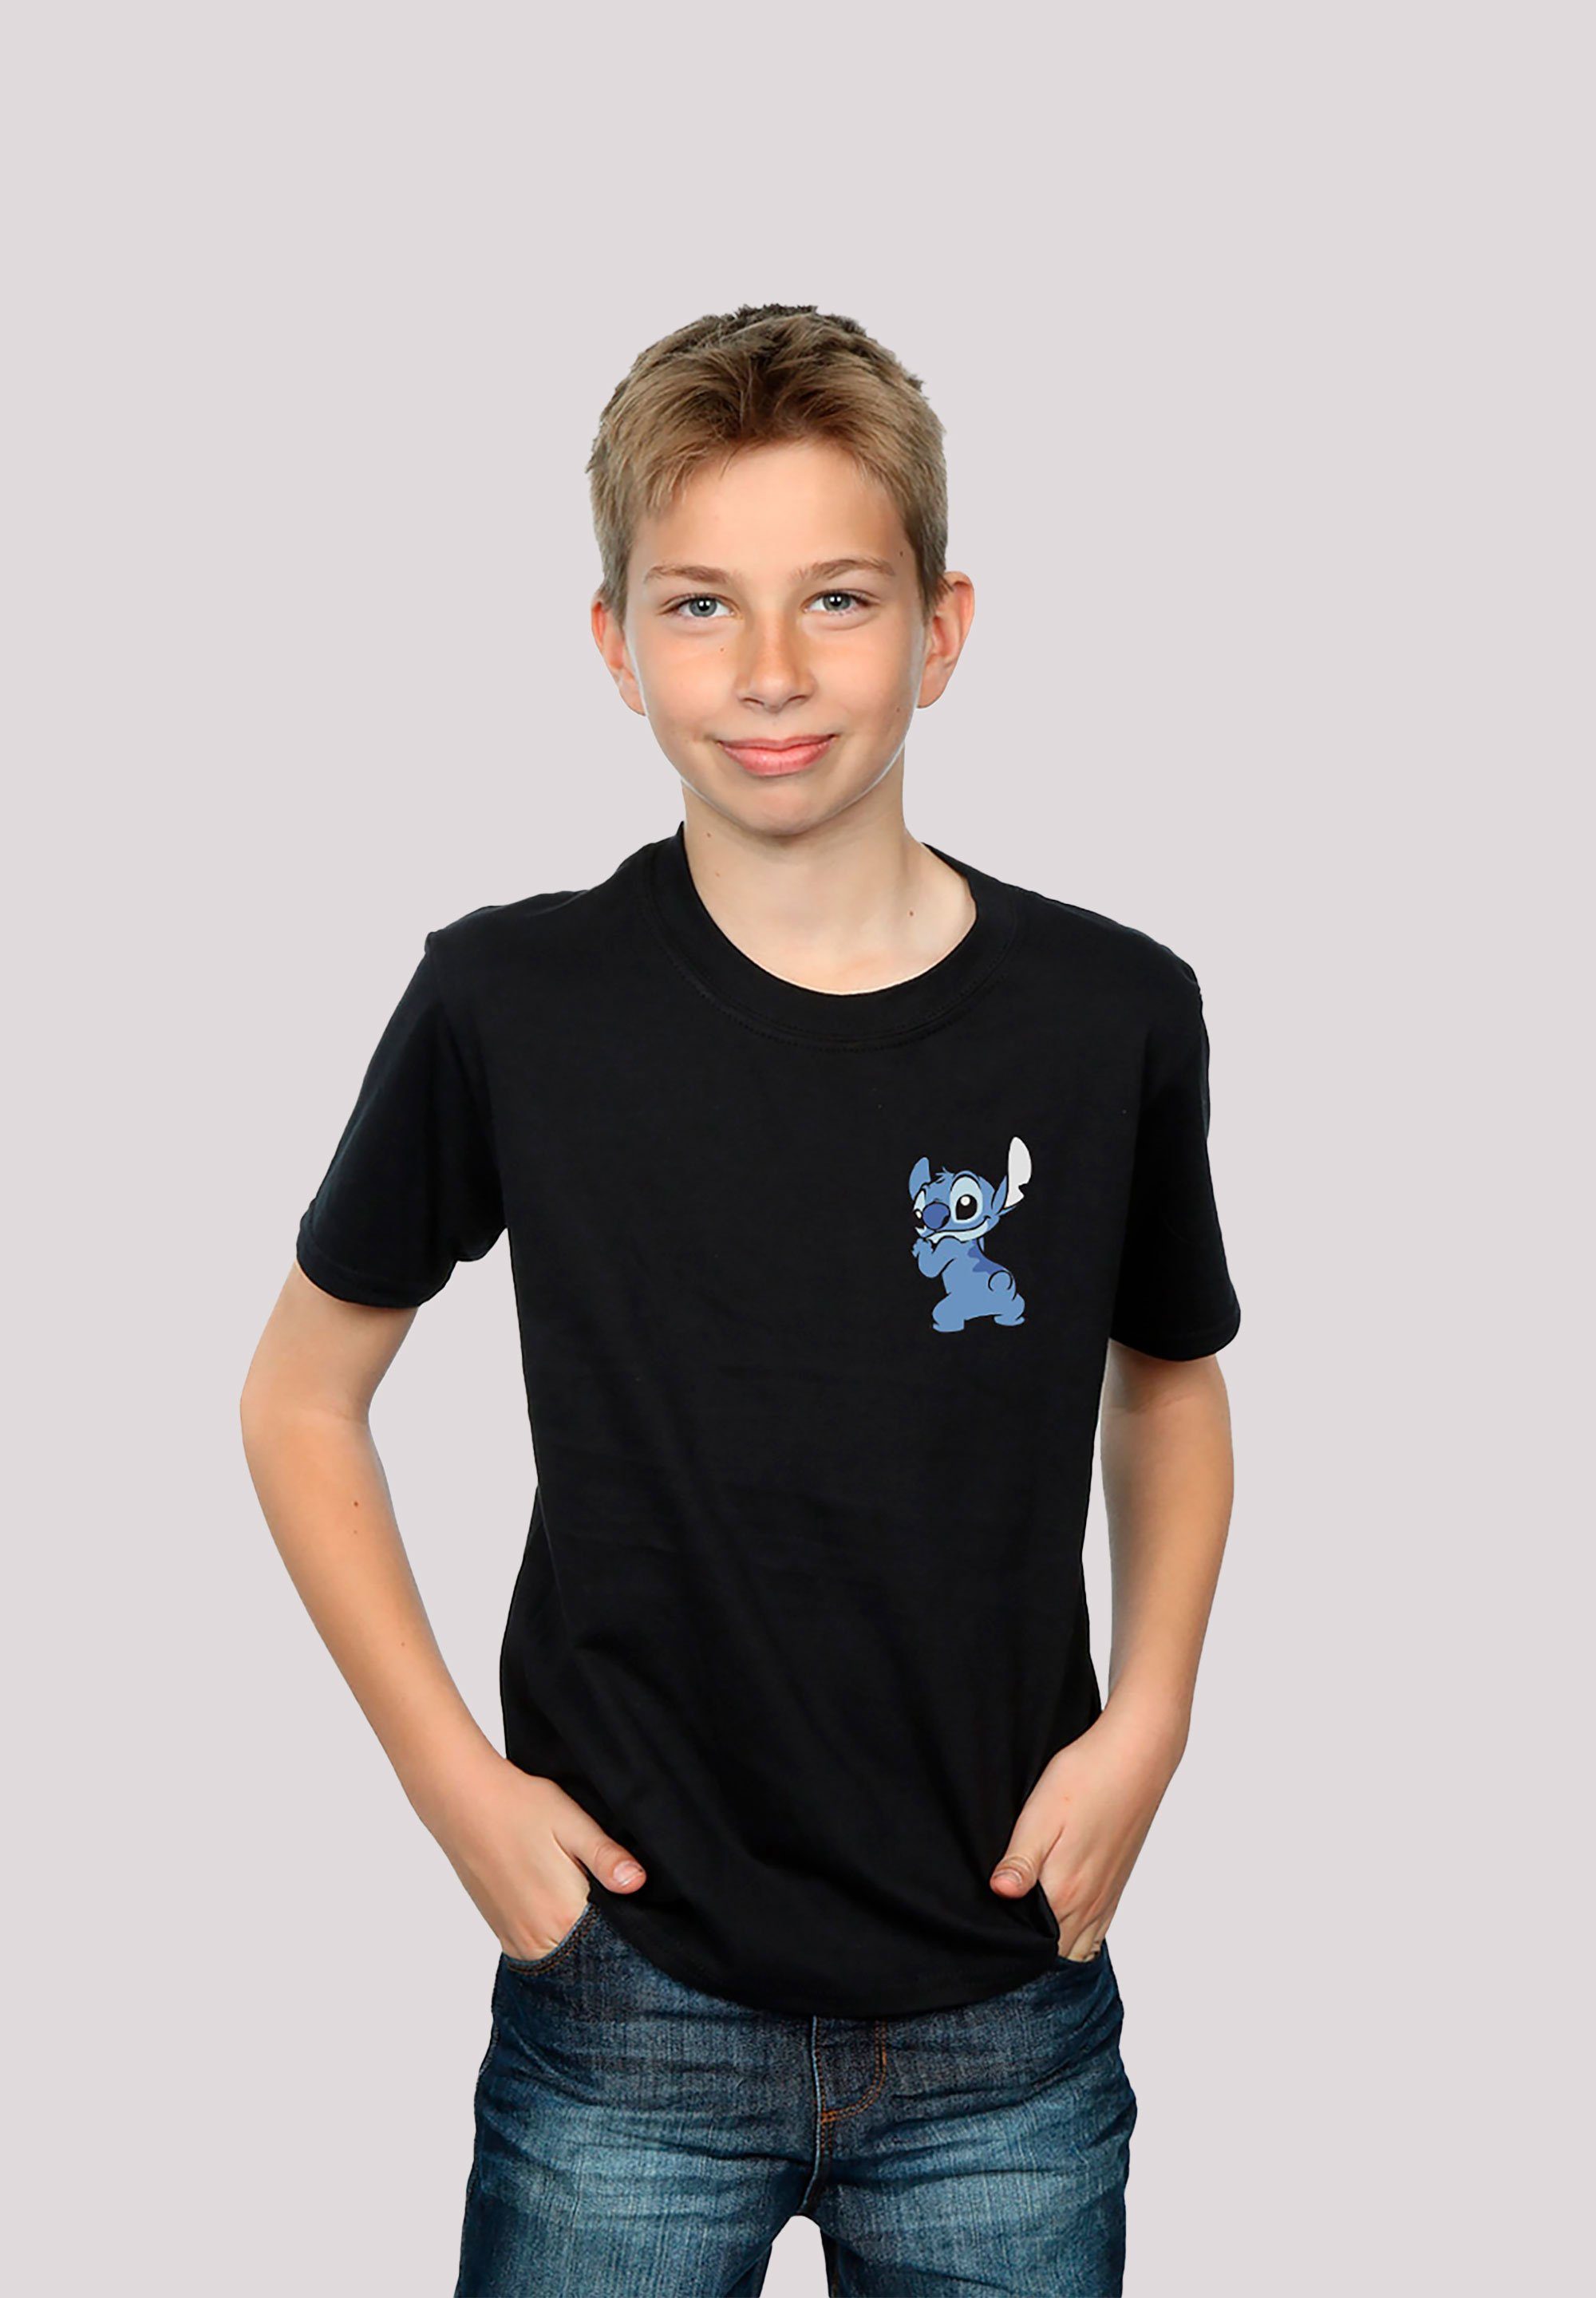 schwarz Stitch And Unisex Kinder,Premium Merch,Jungen,Mädchen,Bedruckt Lilo T-Shirt F4NT4STIC Disney